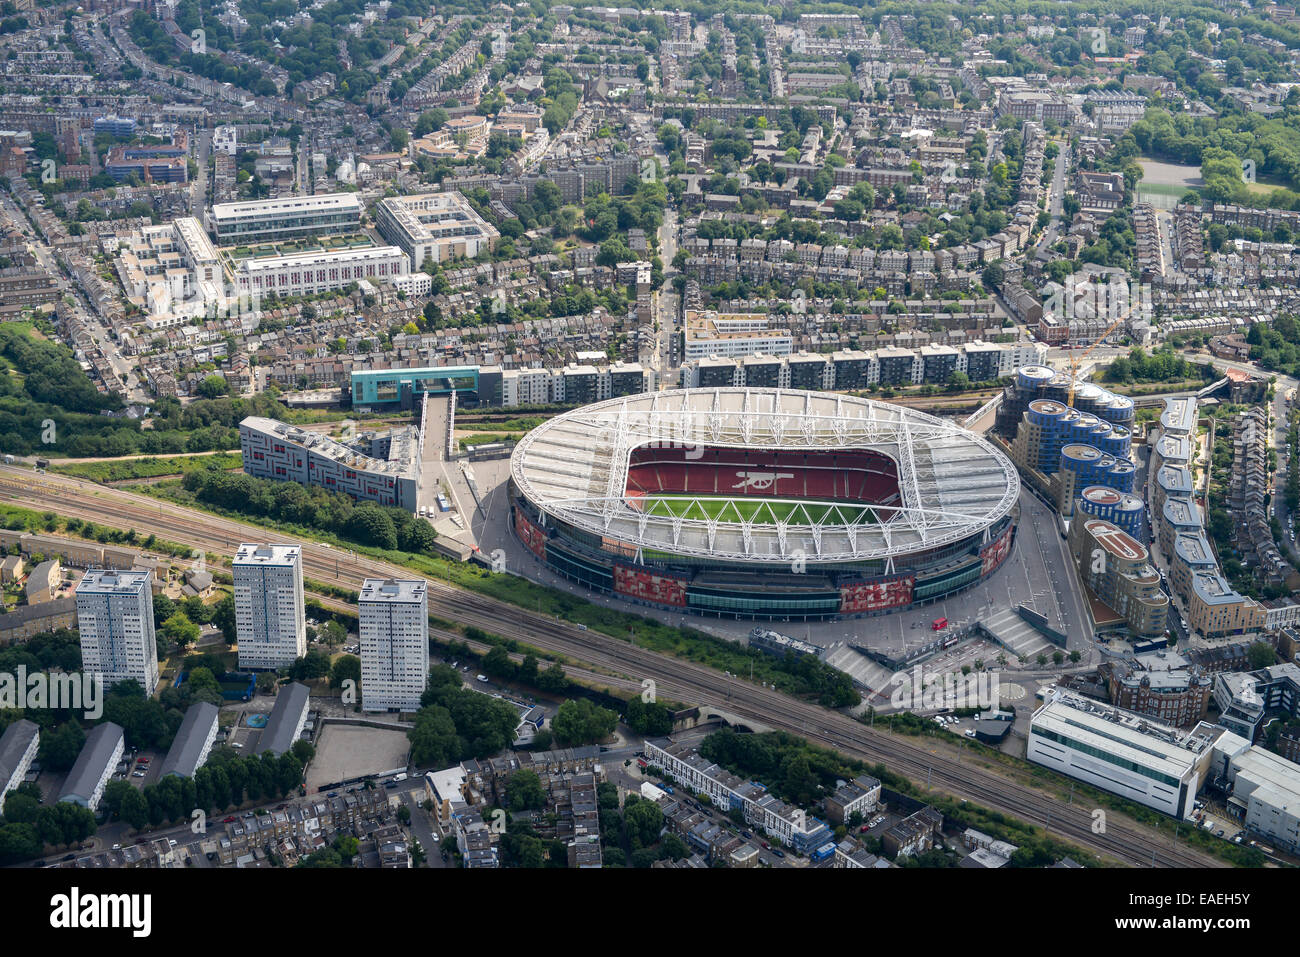 Eine Luftaufnahme des Emirates Stadium, Heimat des Arsenal FC. Ihre ehemalige Heimat ist Highbury im Hintergrund Stockfoto